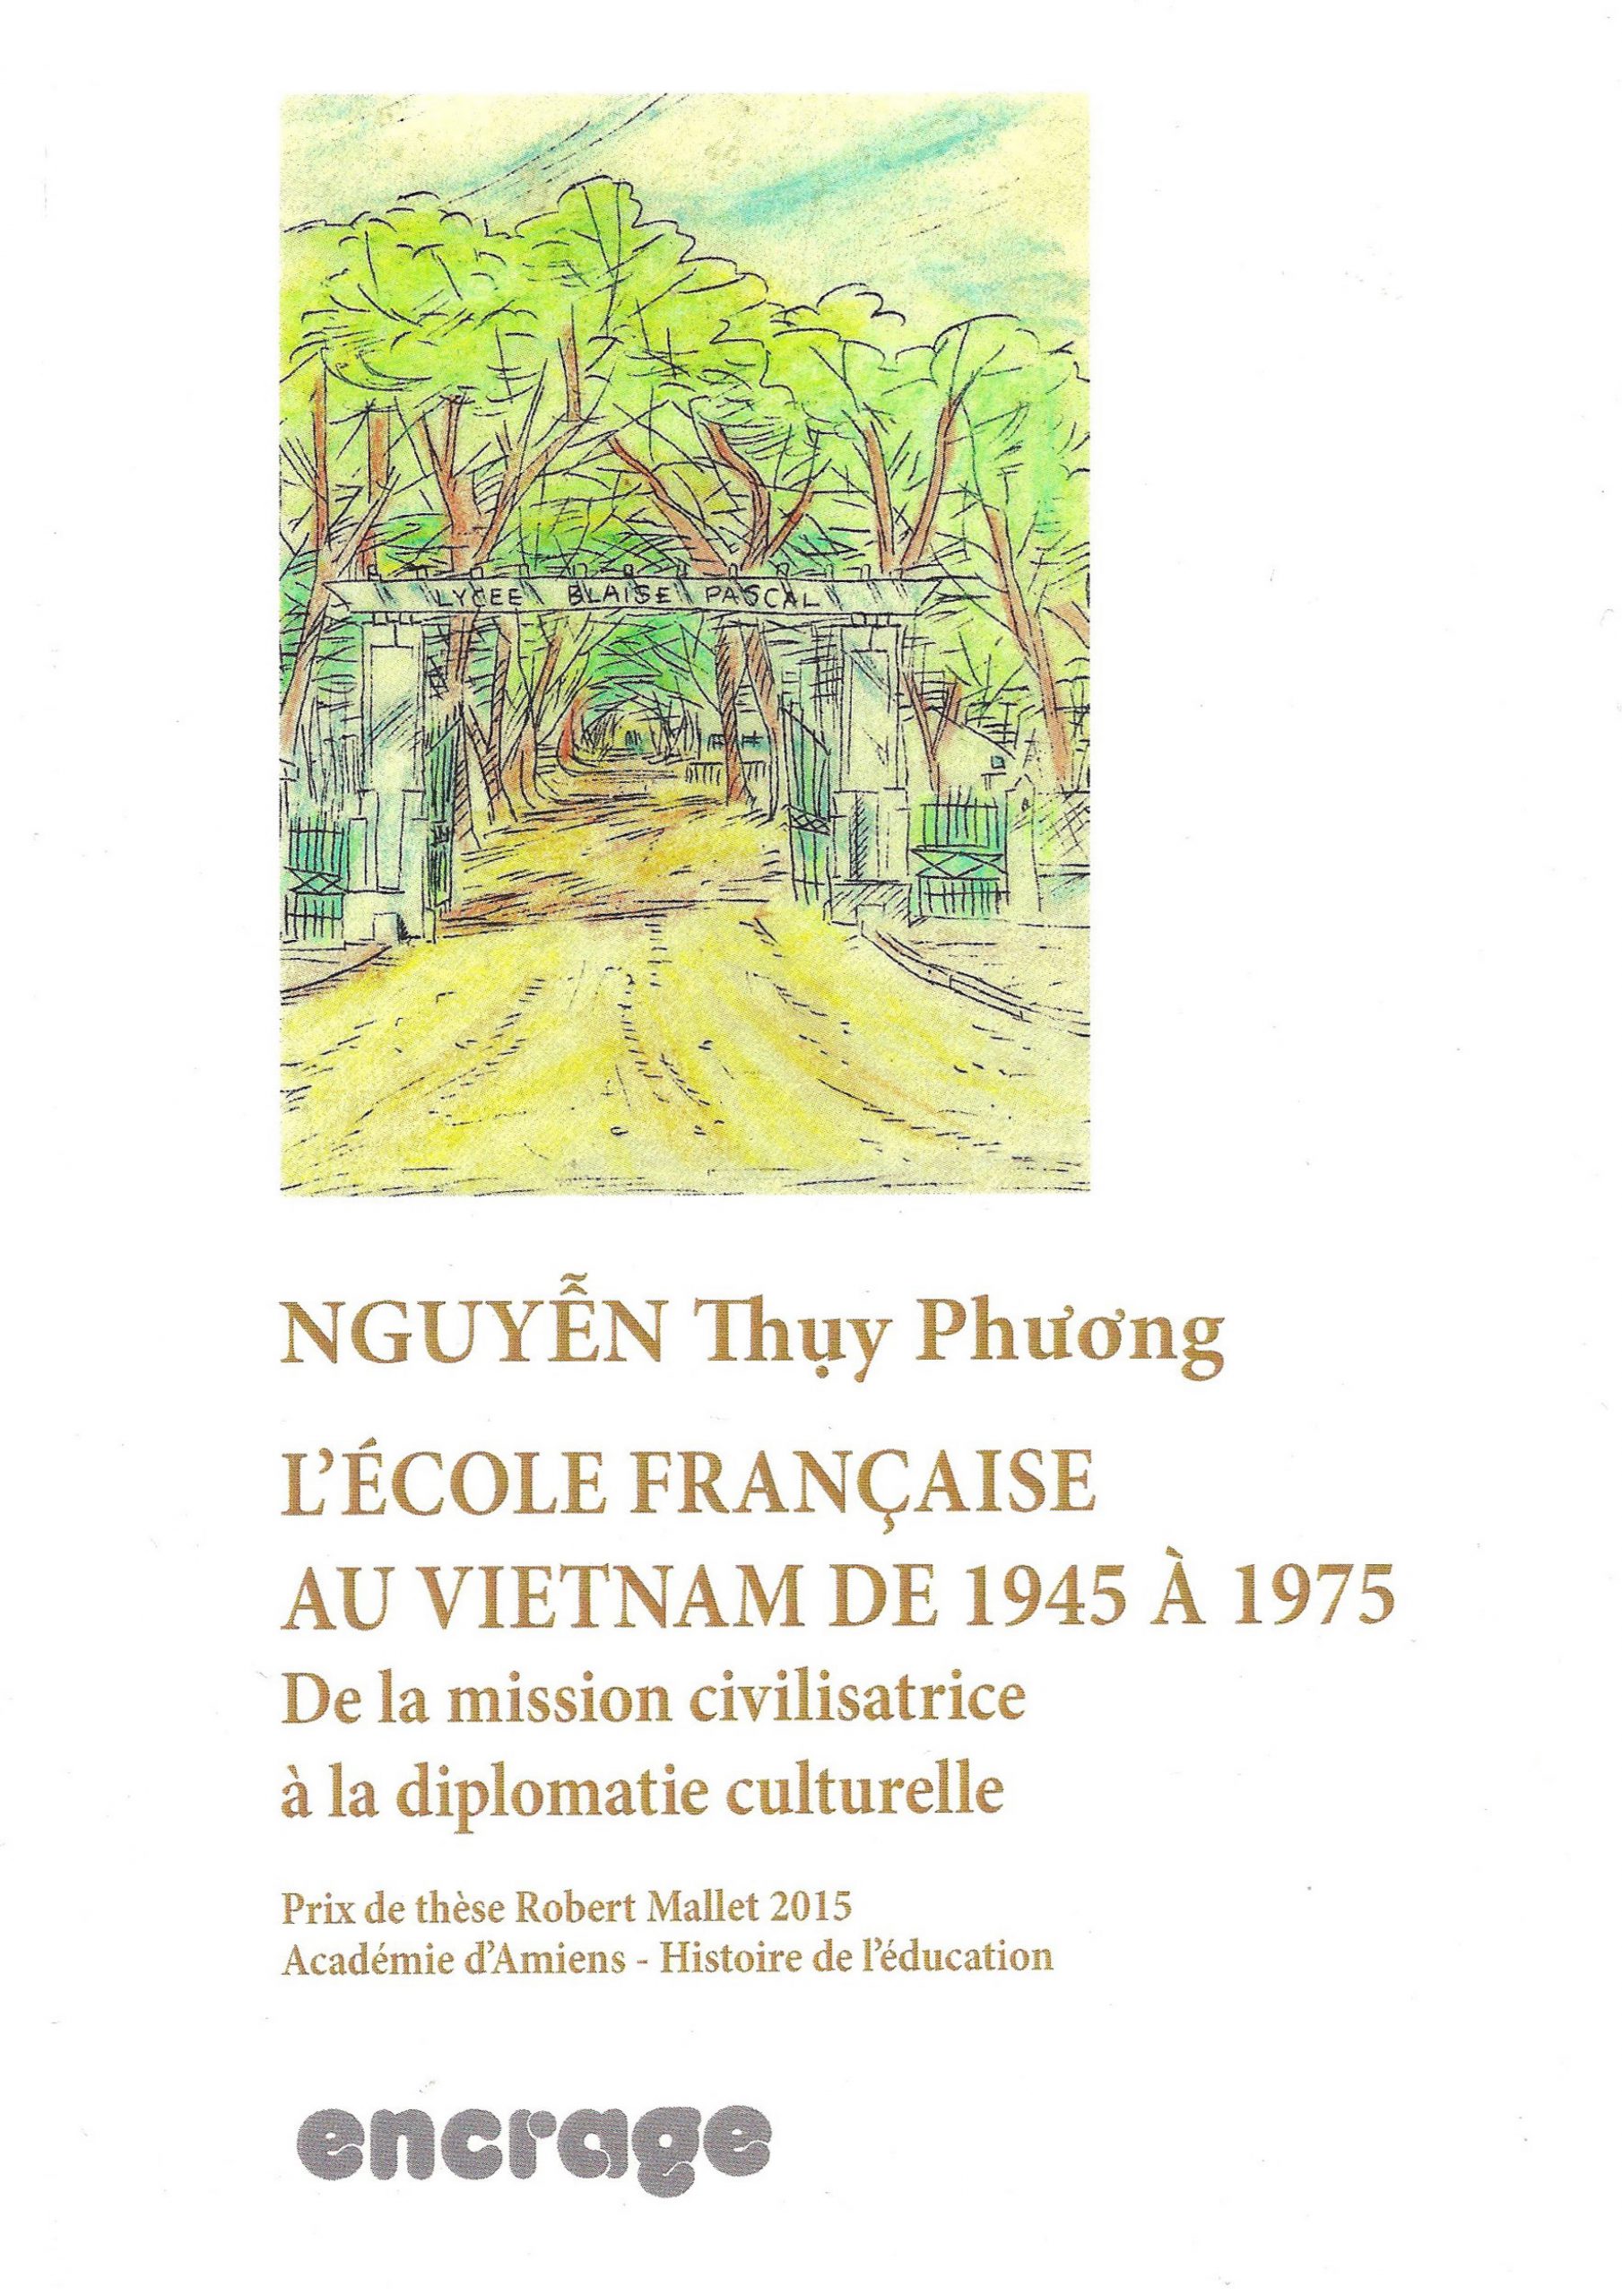 Trường Pháp ở Việt Nam từ 1945 đến 1975